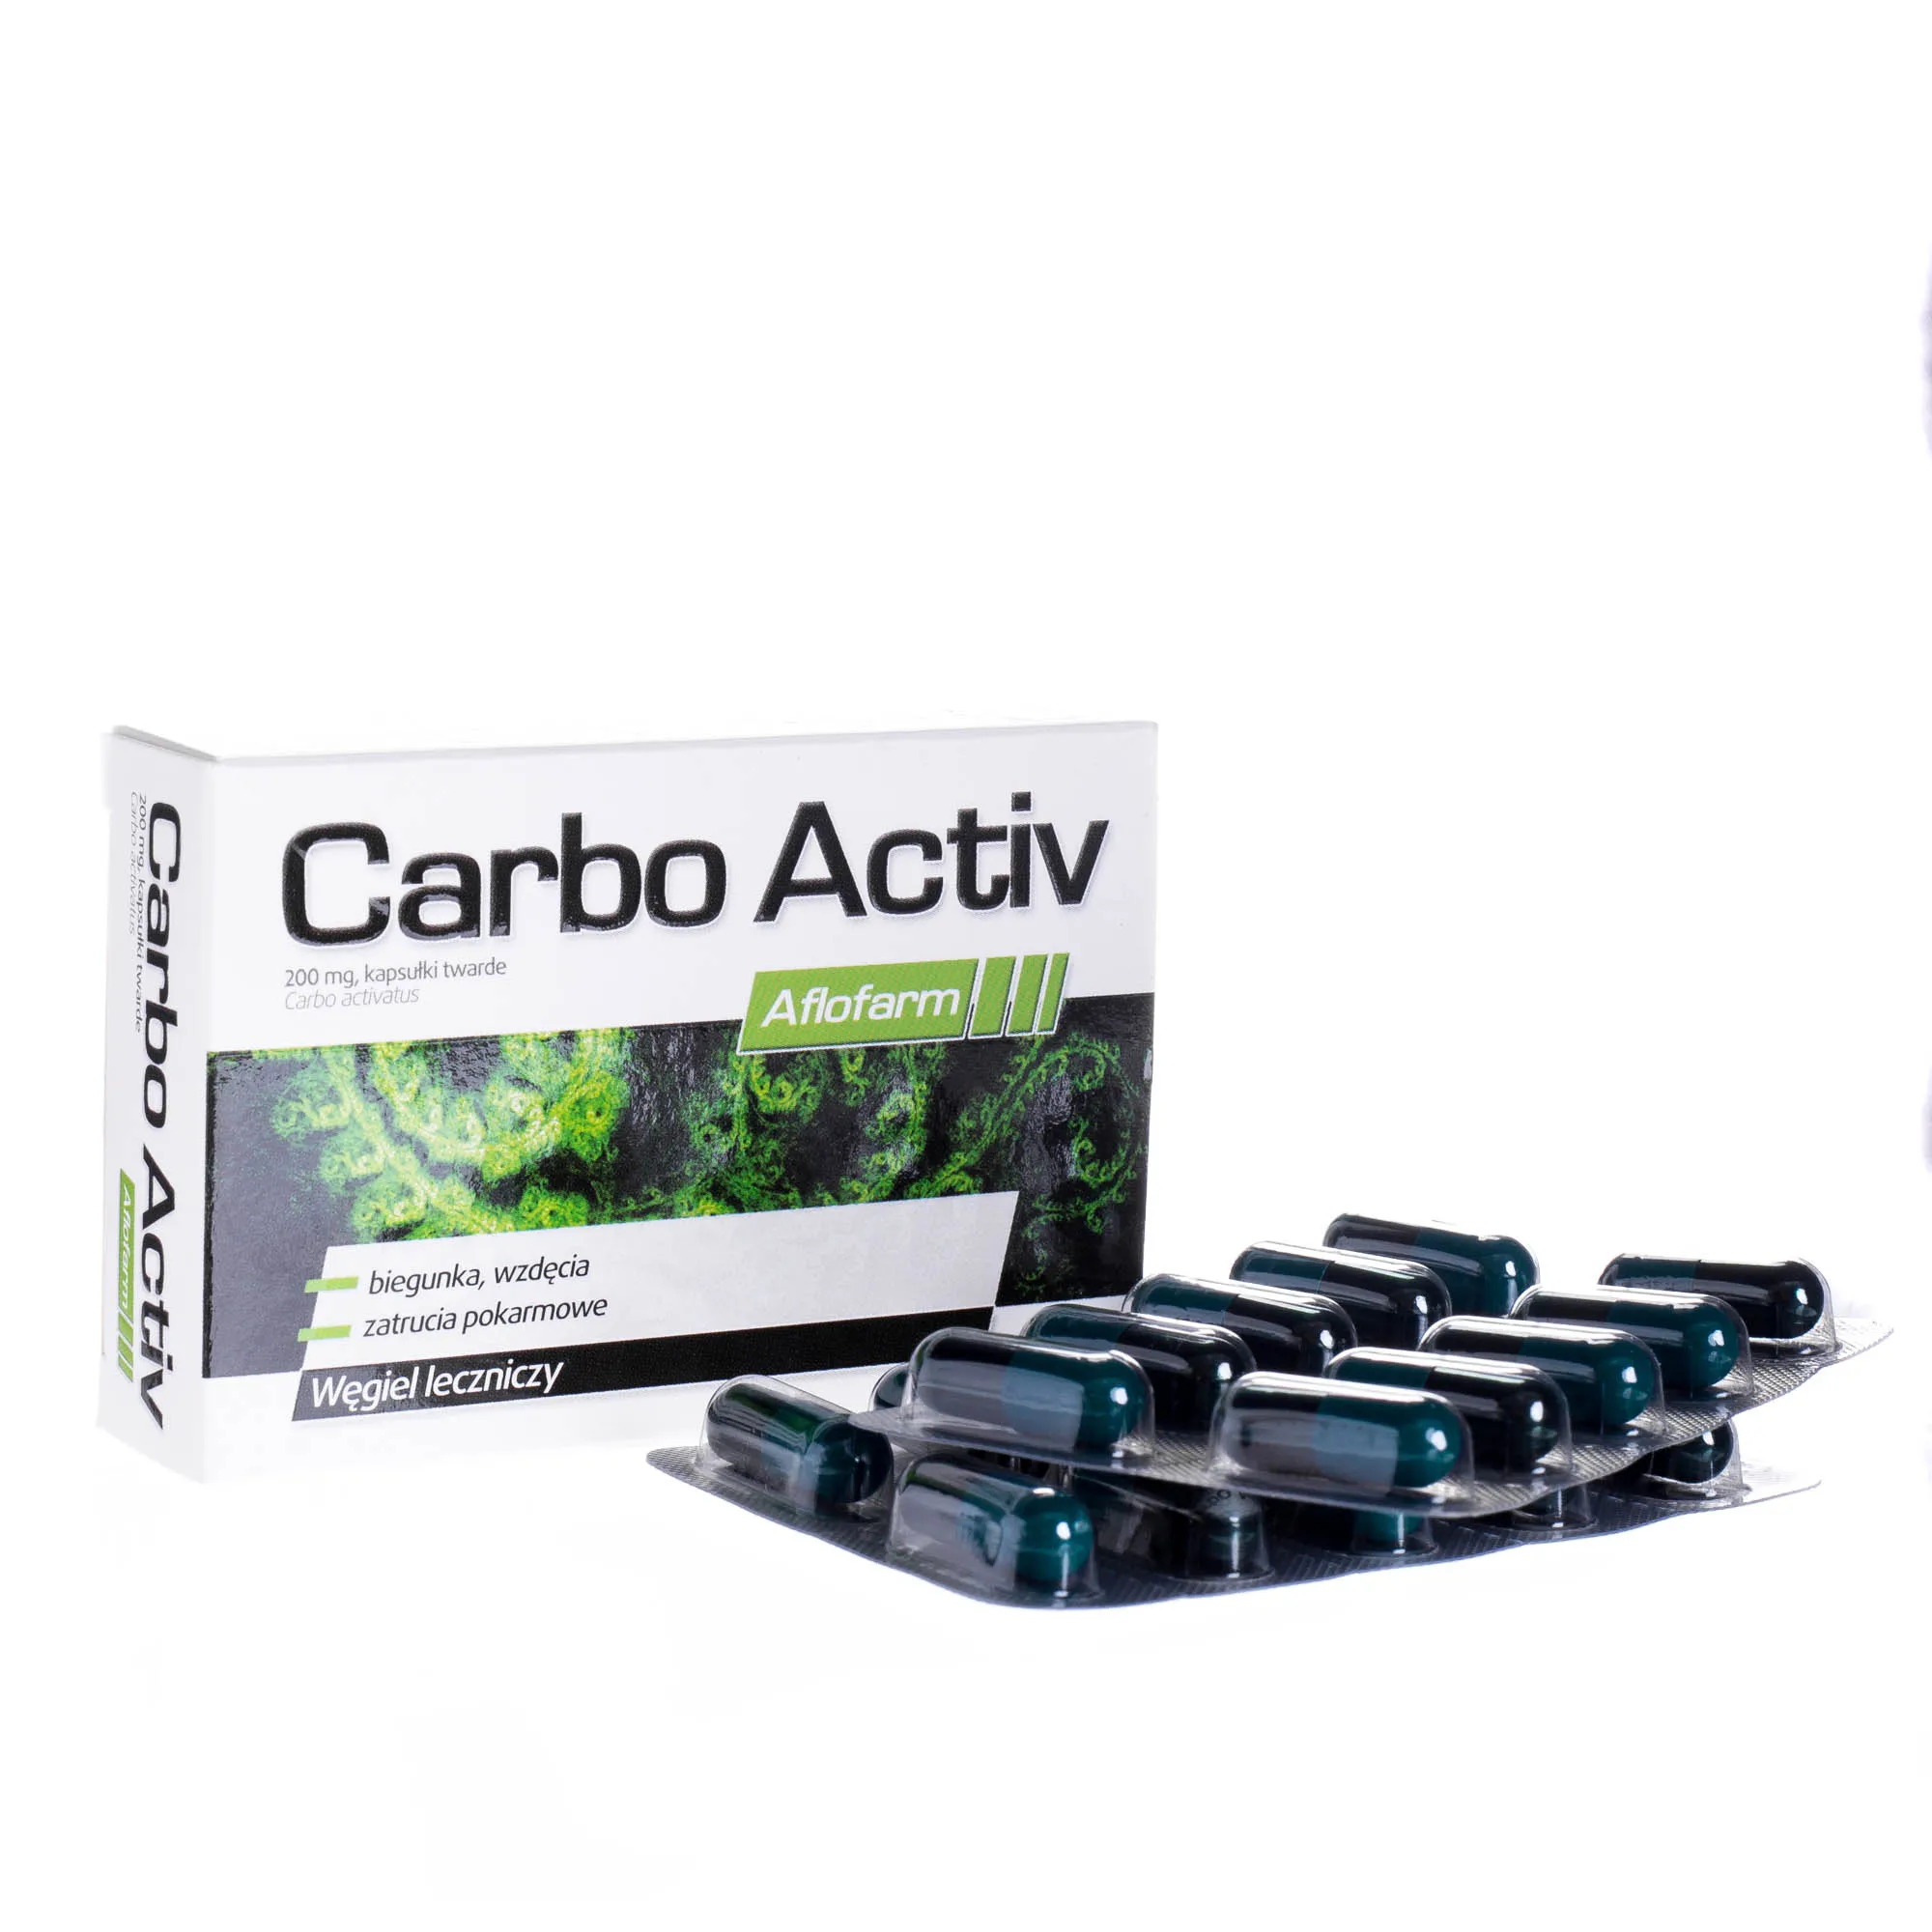 Carbo Activ - węgiel leczniczy stosowany przy problemach układu pokarmowego, 20 kapsułek twardych